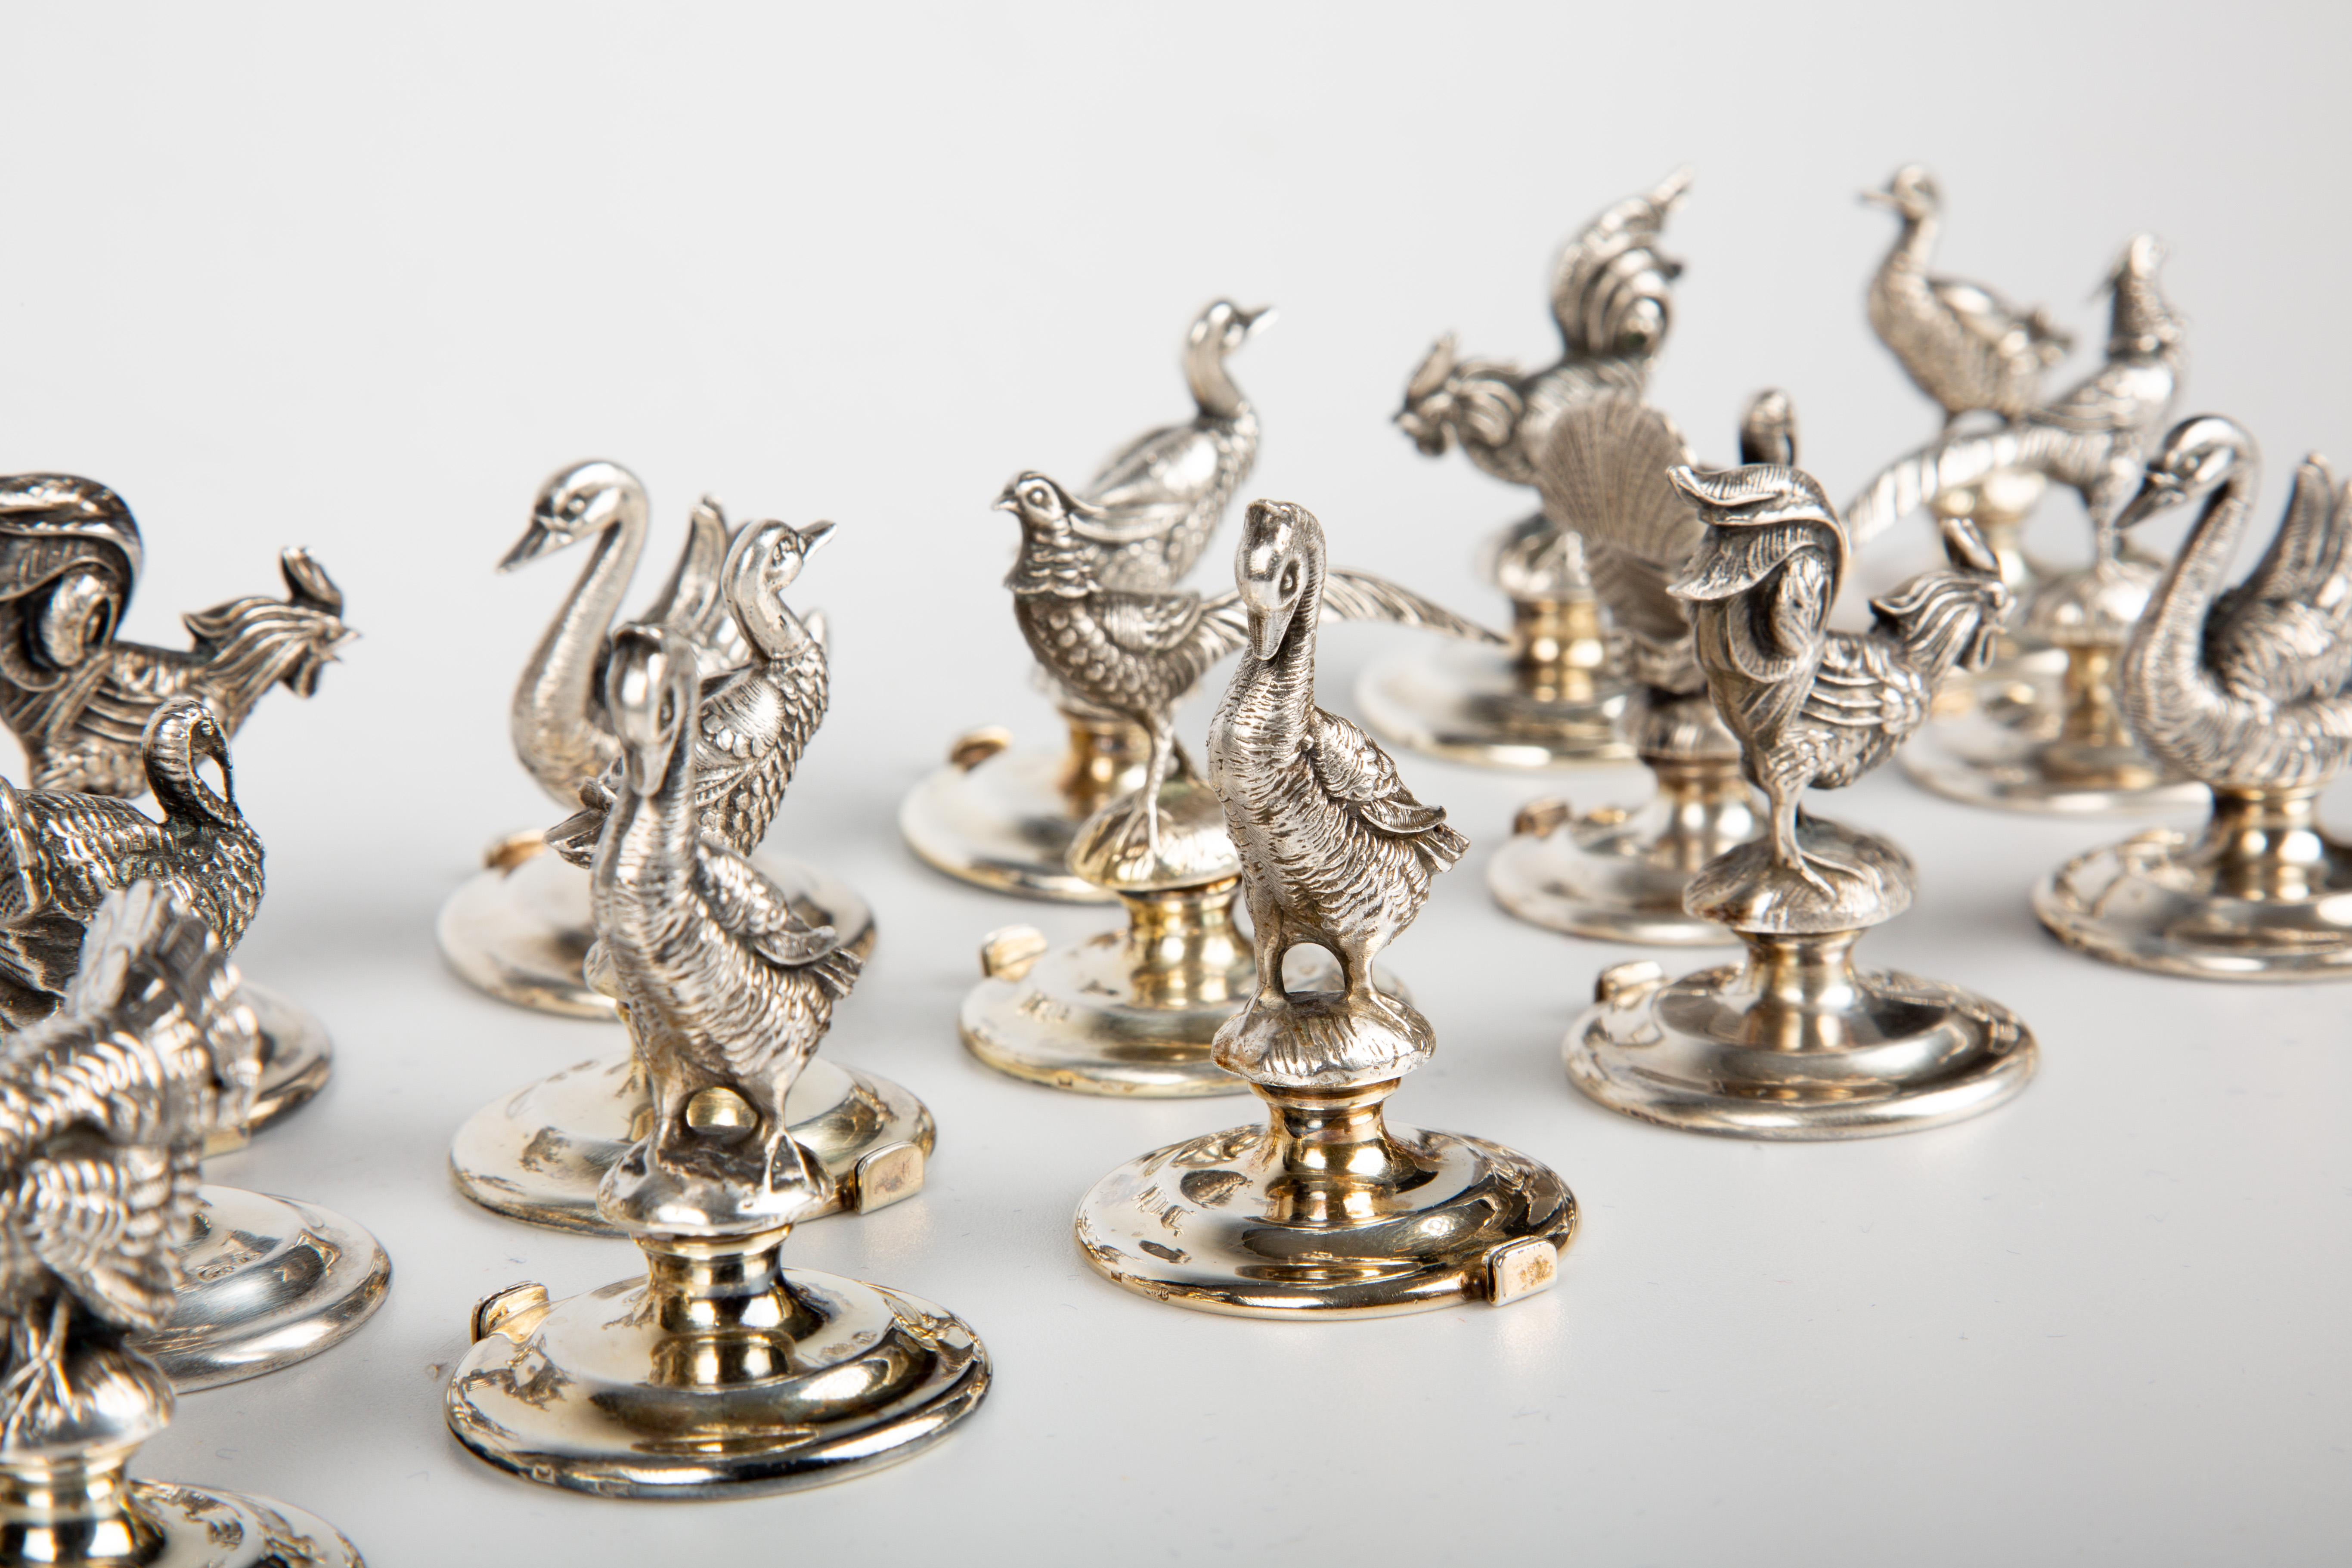 Diese exquisite Kollektion umfasst ein außergewöhnlich seltenes Set von 18 italienischen Silber-Tischkartenhaltern, die jeweils sorgfältig nach dem Vorbild verschiedener Vogelarten gestaltet sind, darunter Truthähne, Fasane, Wachteln, Enten, Hühner